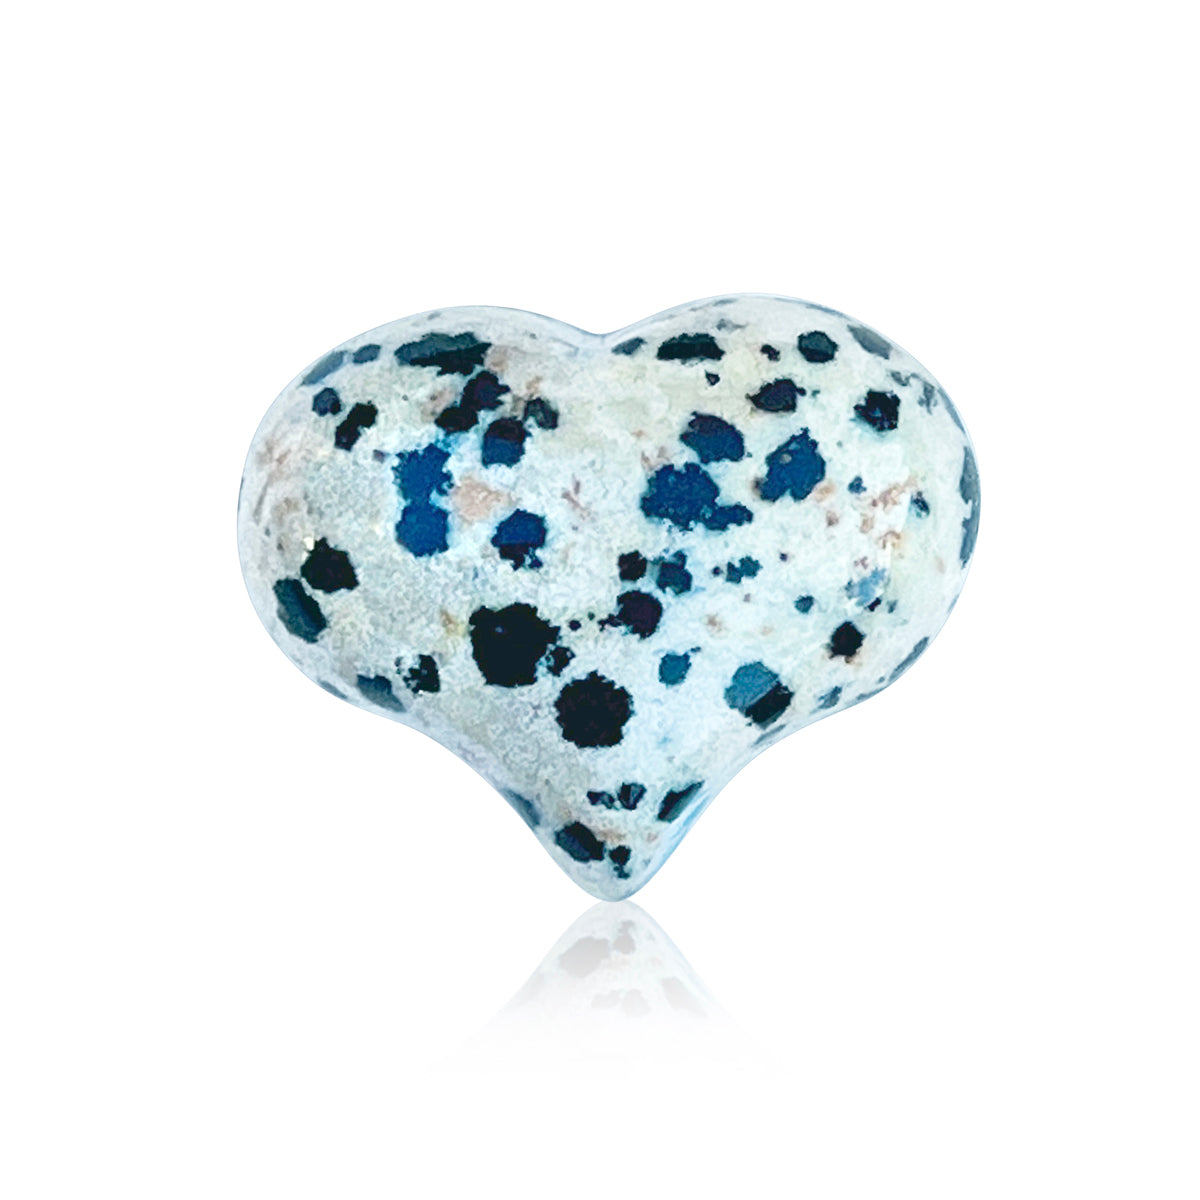 Dalmatian Jasper Heart Shaped Healing Gemstone for a Sense of Playfulness